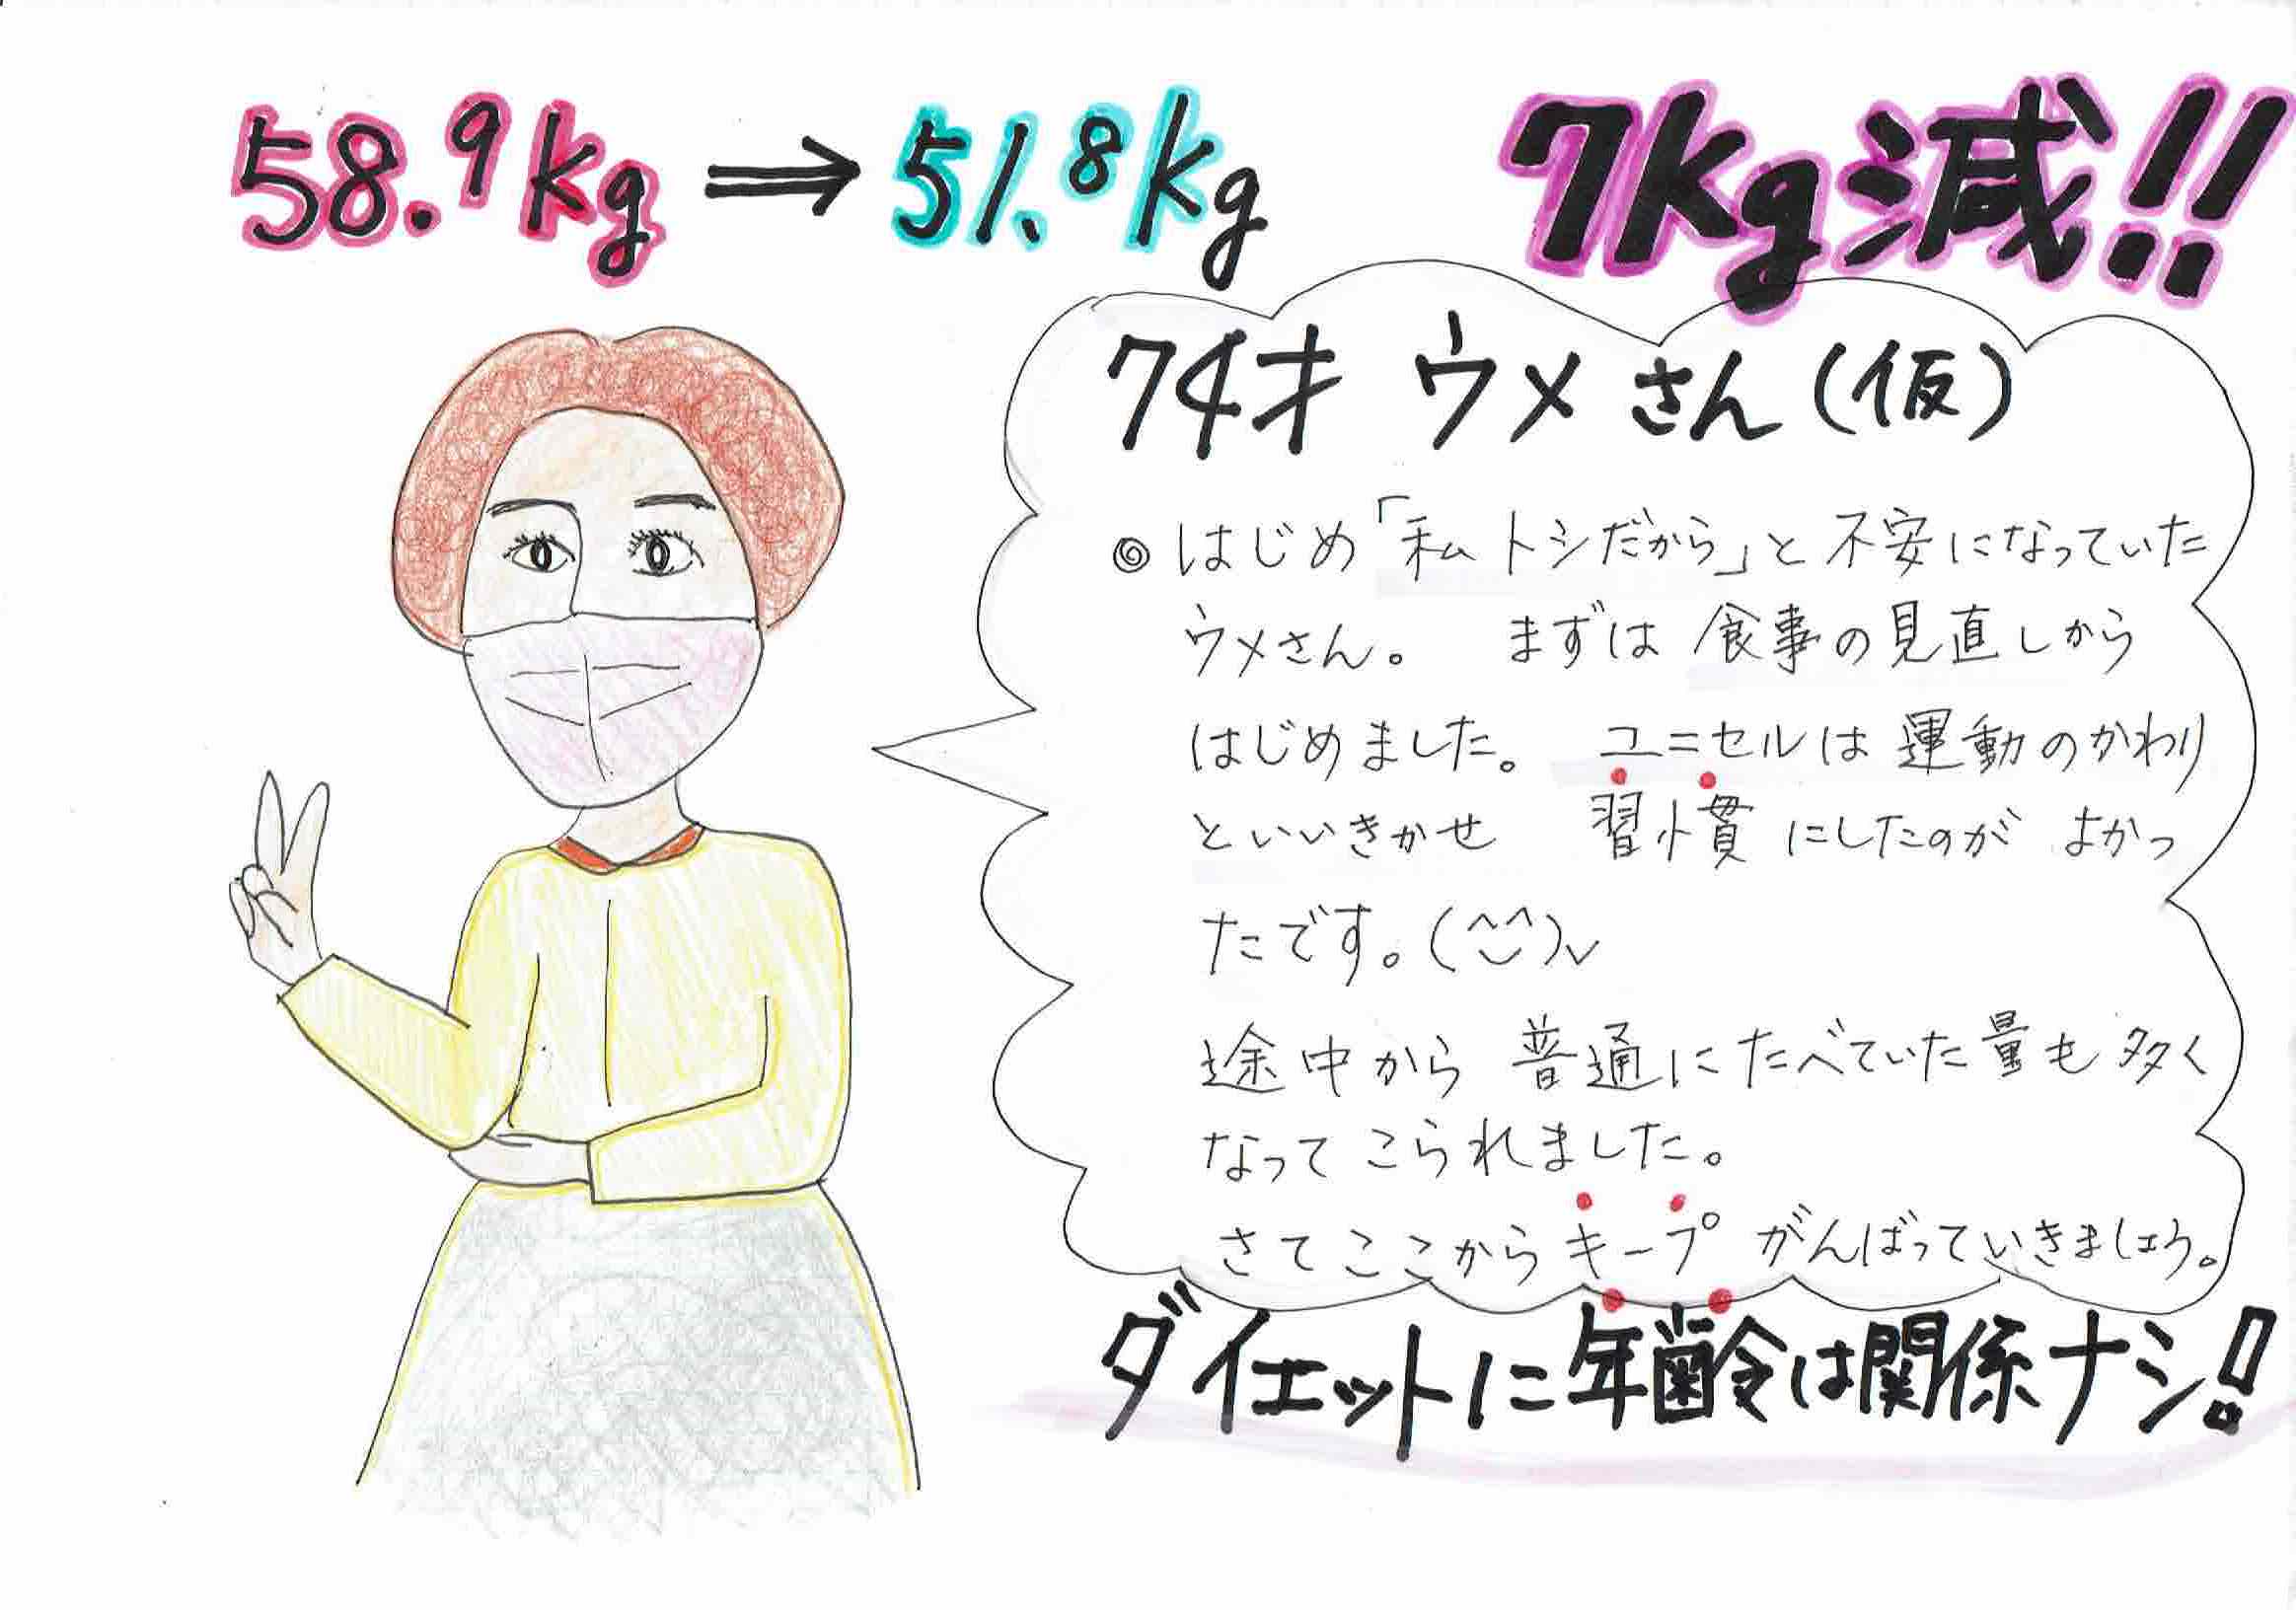 【ダイエット　58.9kg→51.8kg 　７キロ減　74歳ウメさんの成功例】